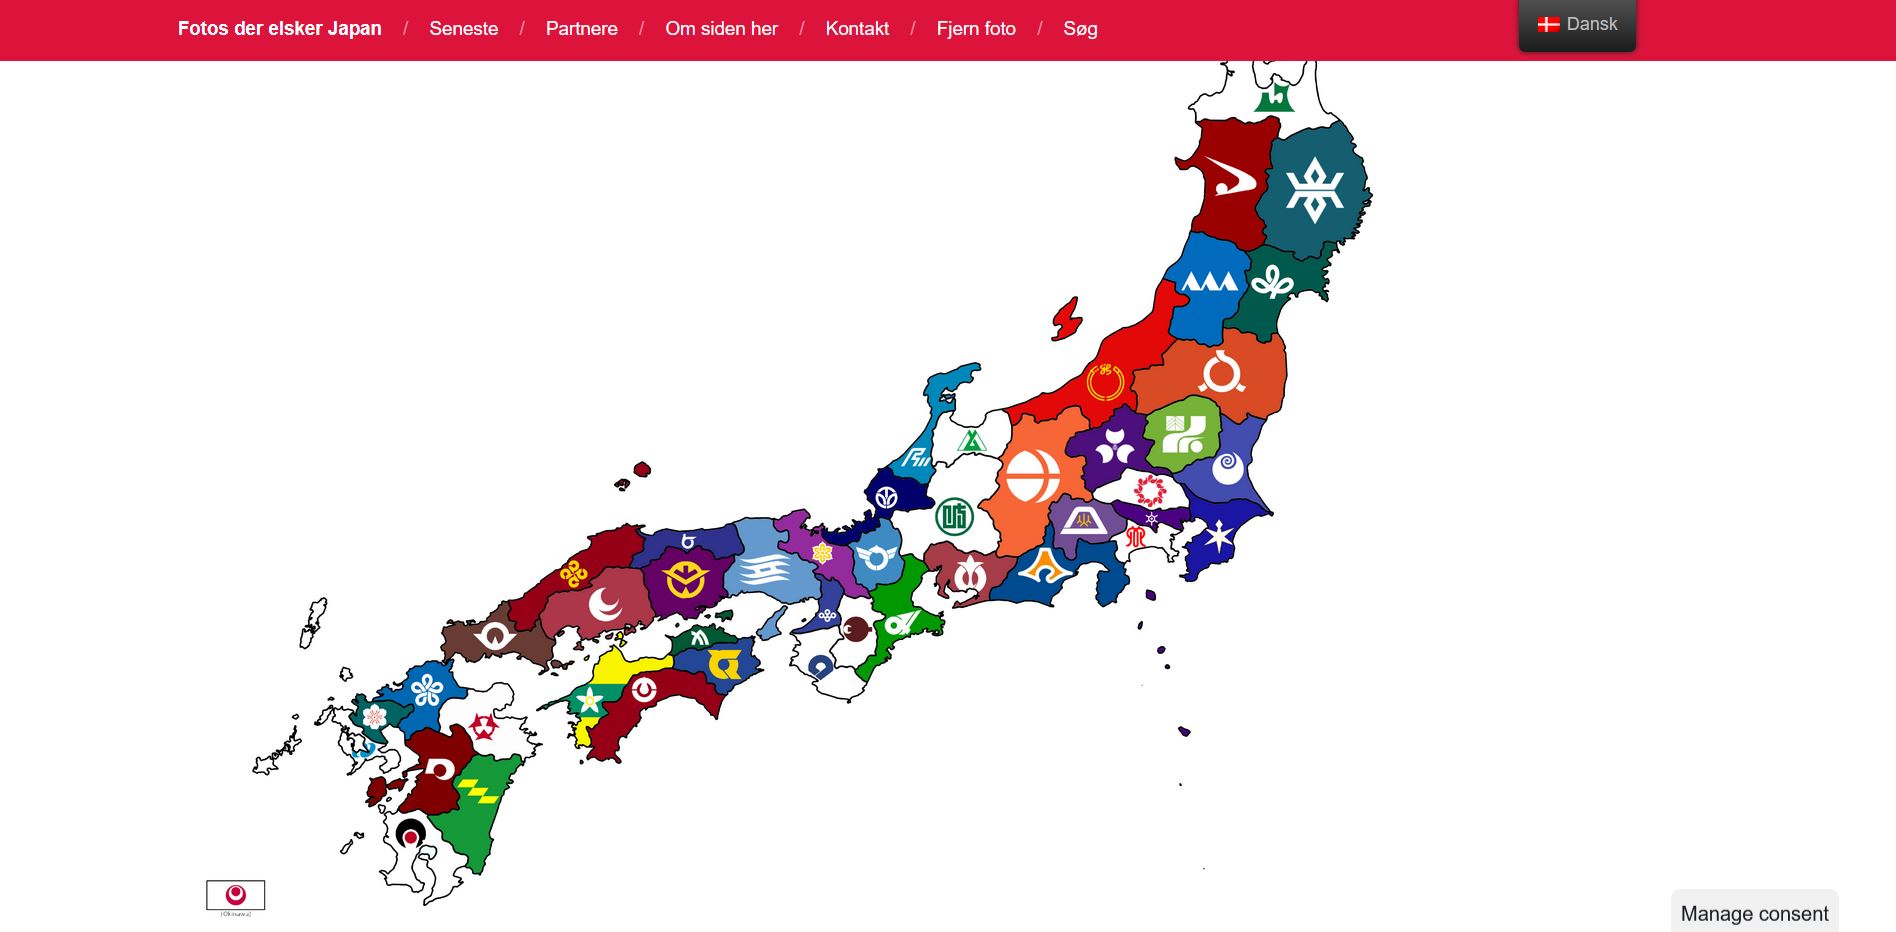 aij.dk 2020 – Fotoblog om Japan